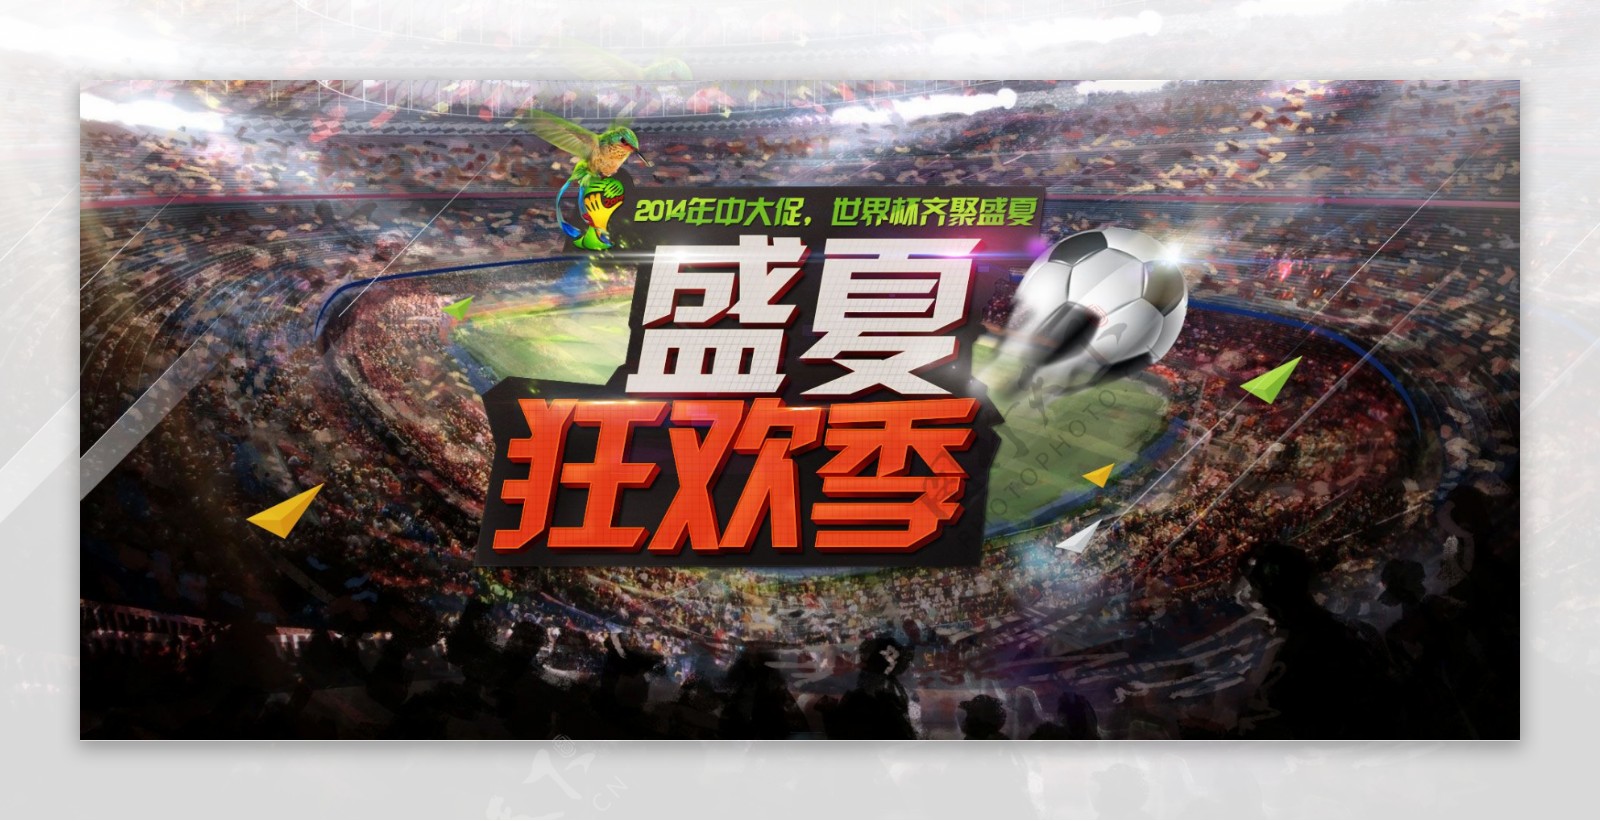 2014年世界杯主题海报